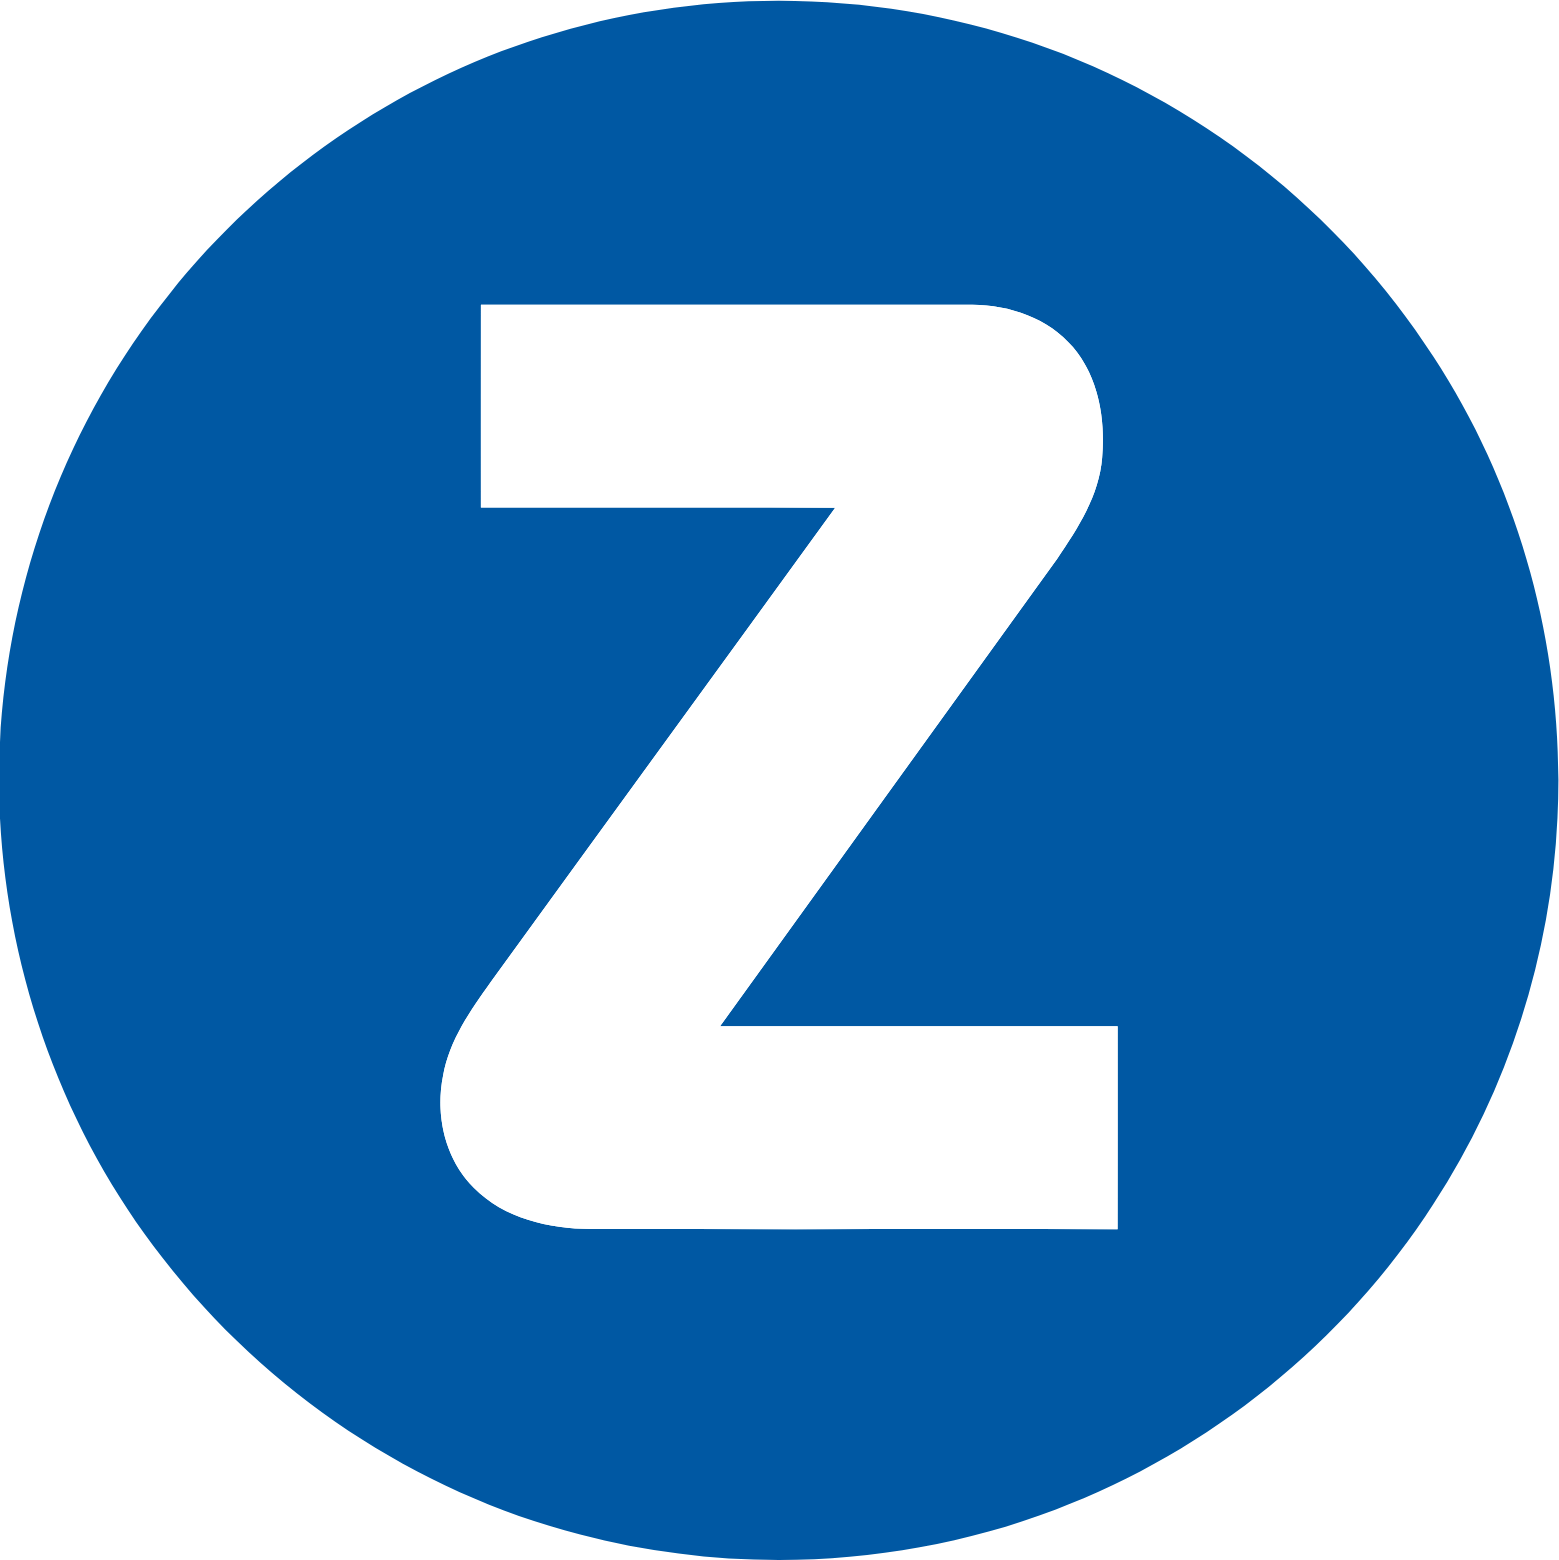 Zealand Pharma logo (transparent PNG)